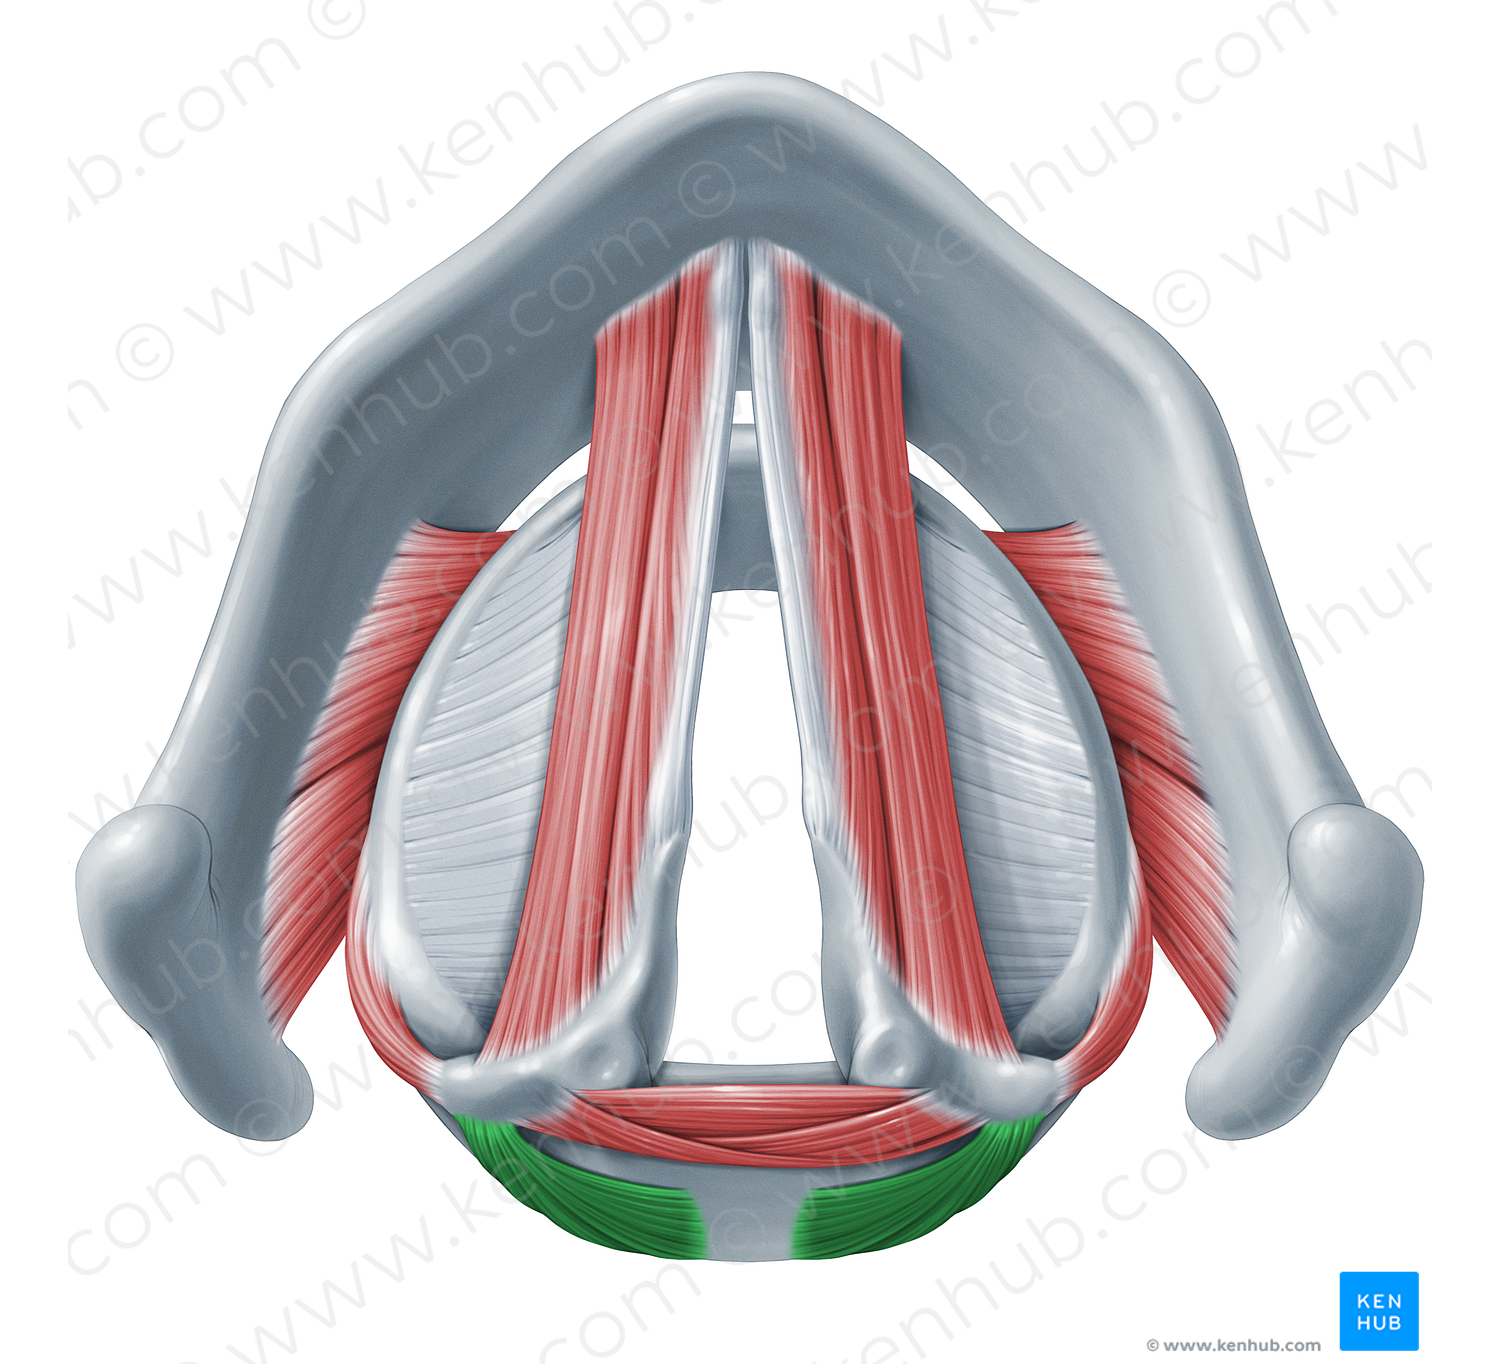 Posterior cricoarytenoid muscle (#18321)